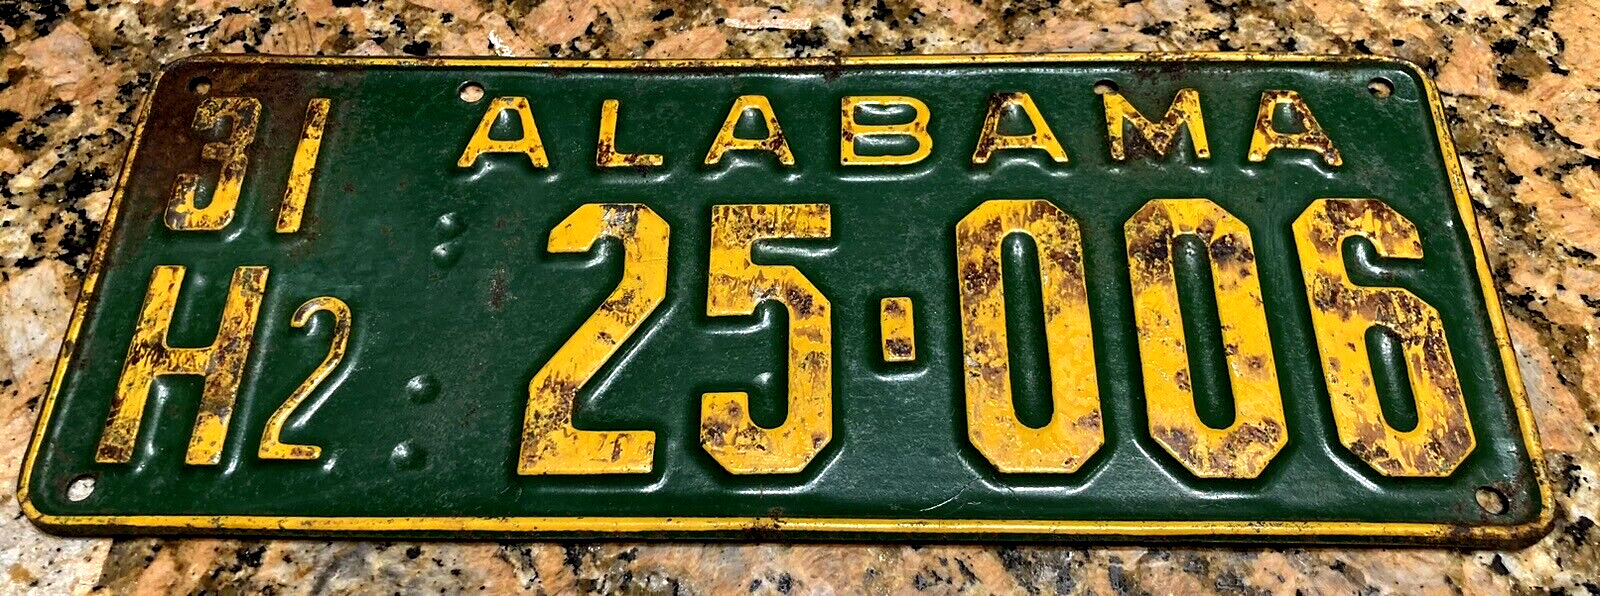 1931 Alabama license plate NICE ORIGINAL H2 25006 YOM Register JOHN DEERE COLORS